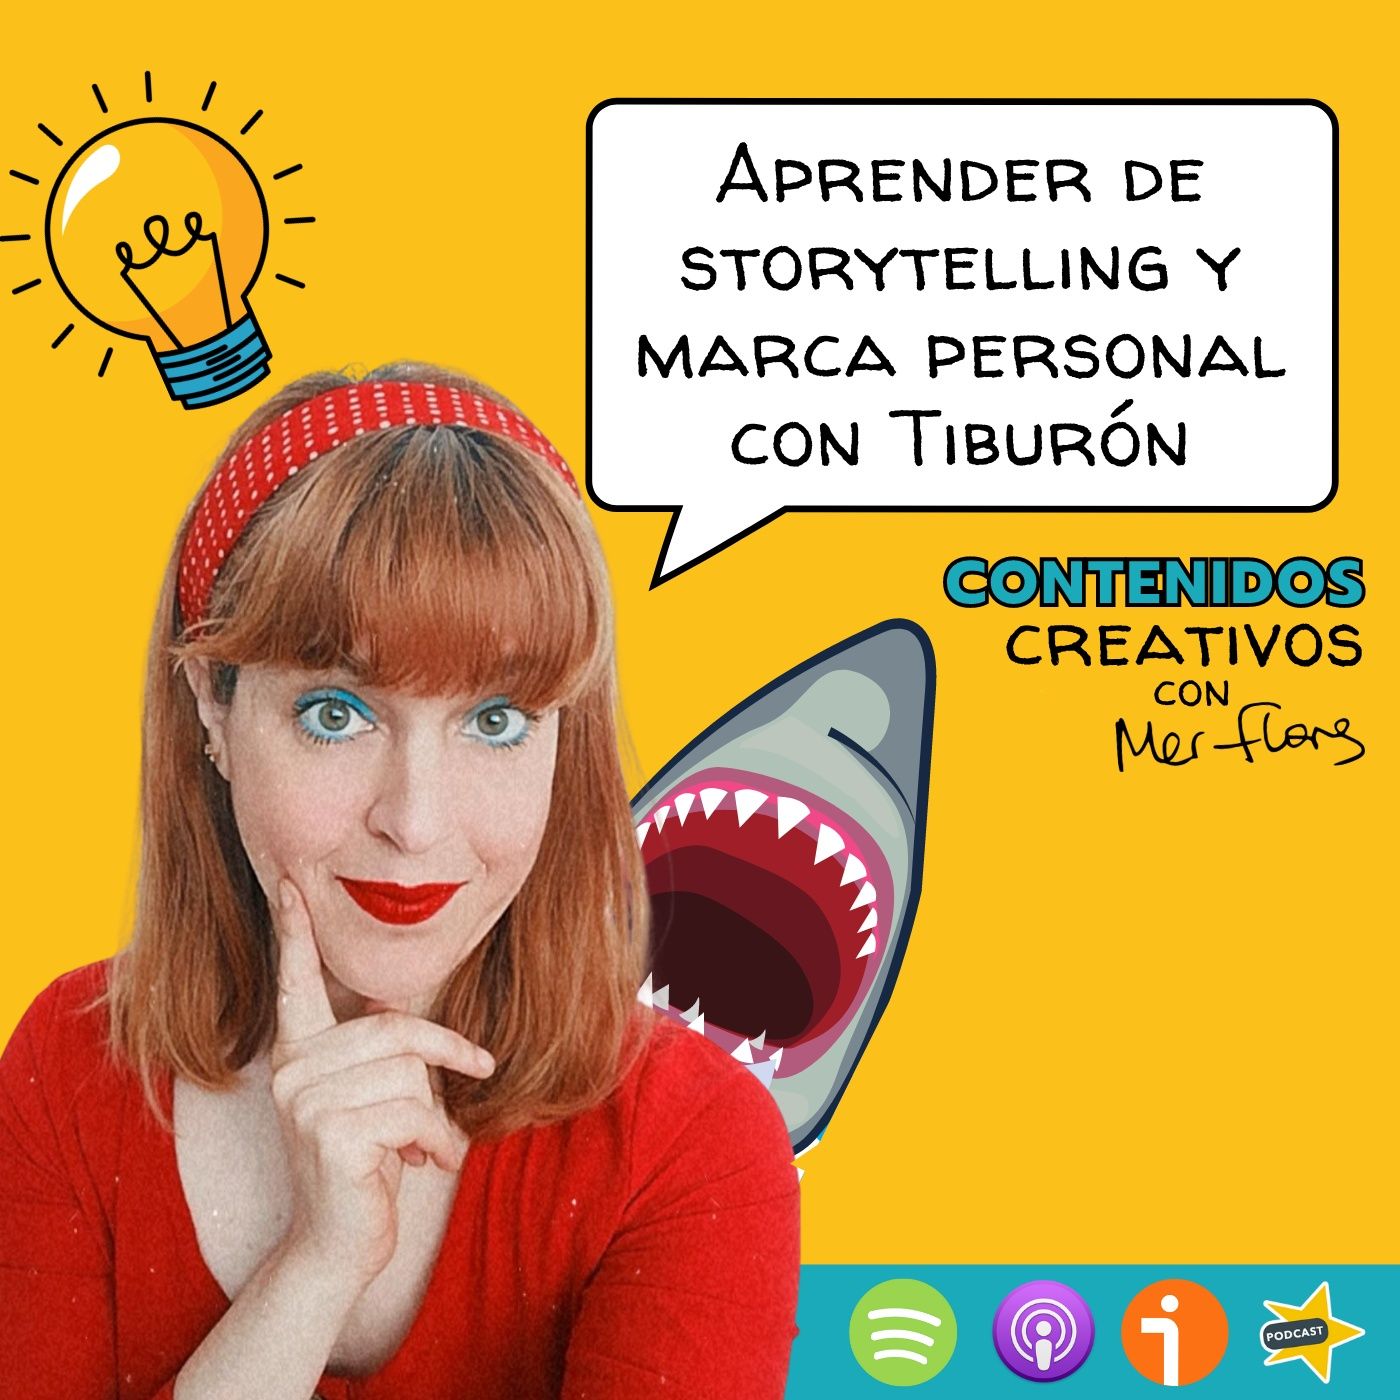 12. Aprender de storytelling y marca personal con Tiburón